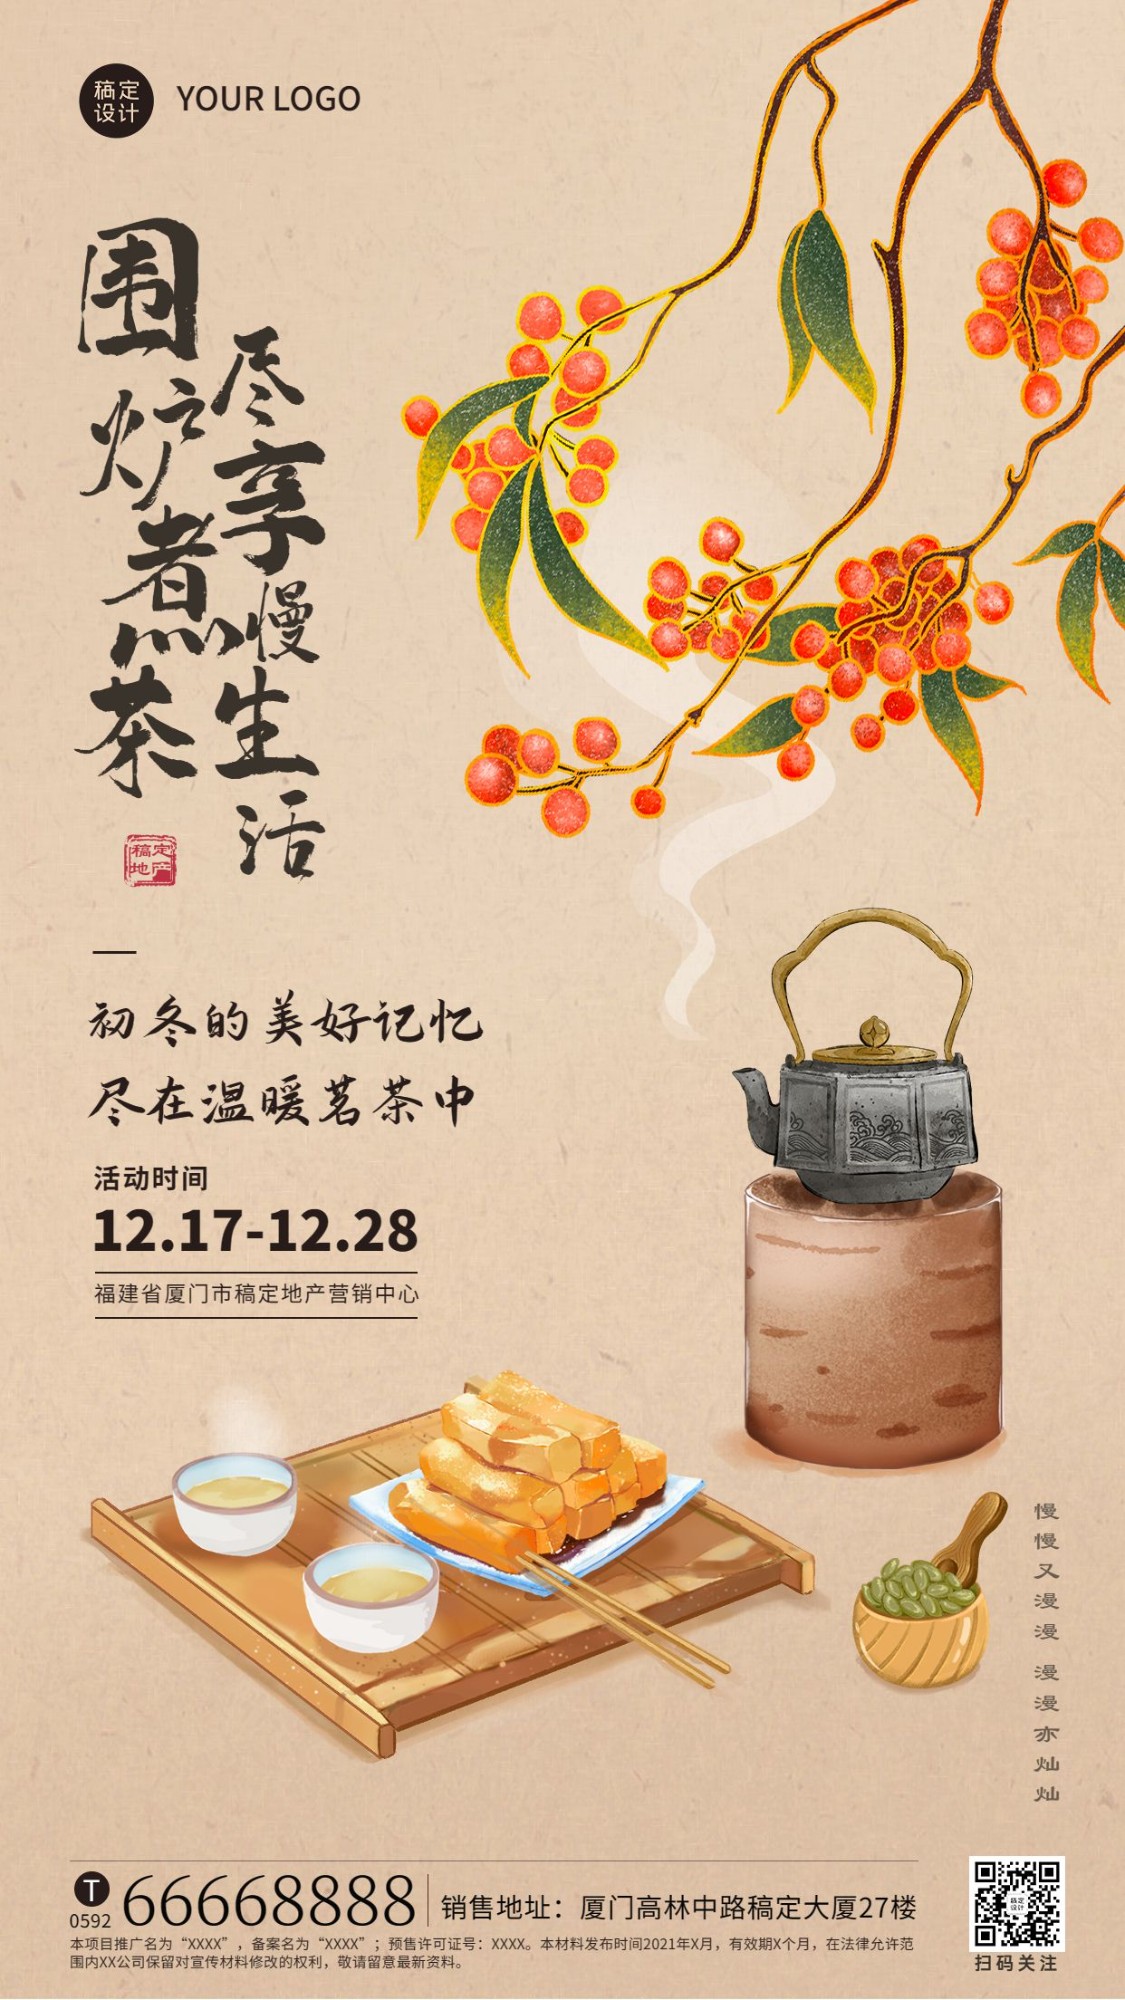 地产企业围炉煮茶活动宣传手机海报